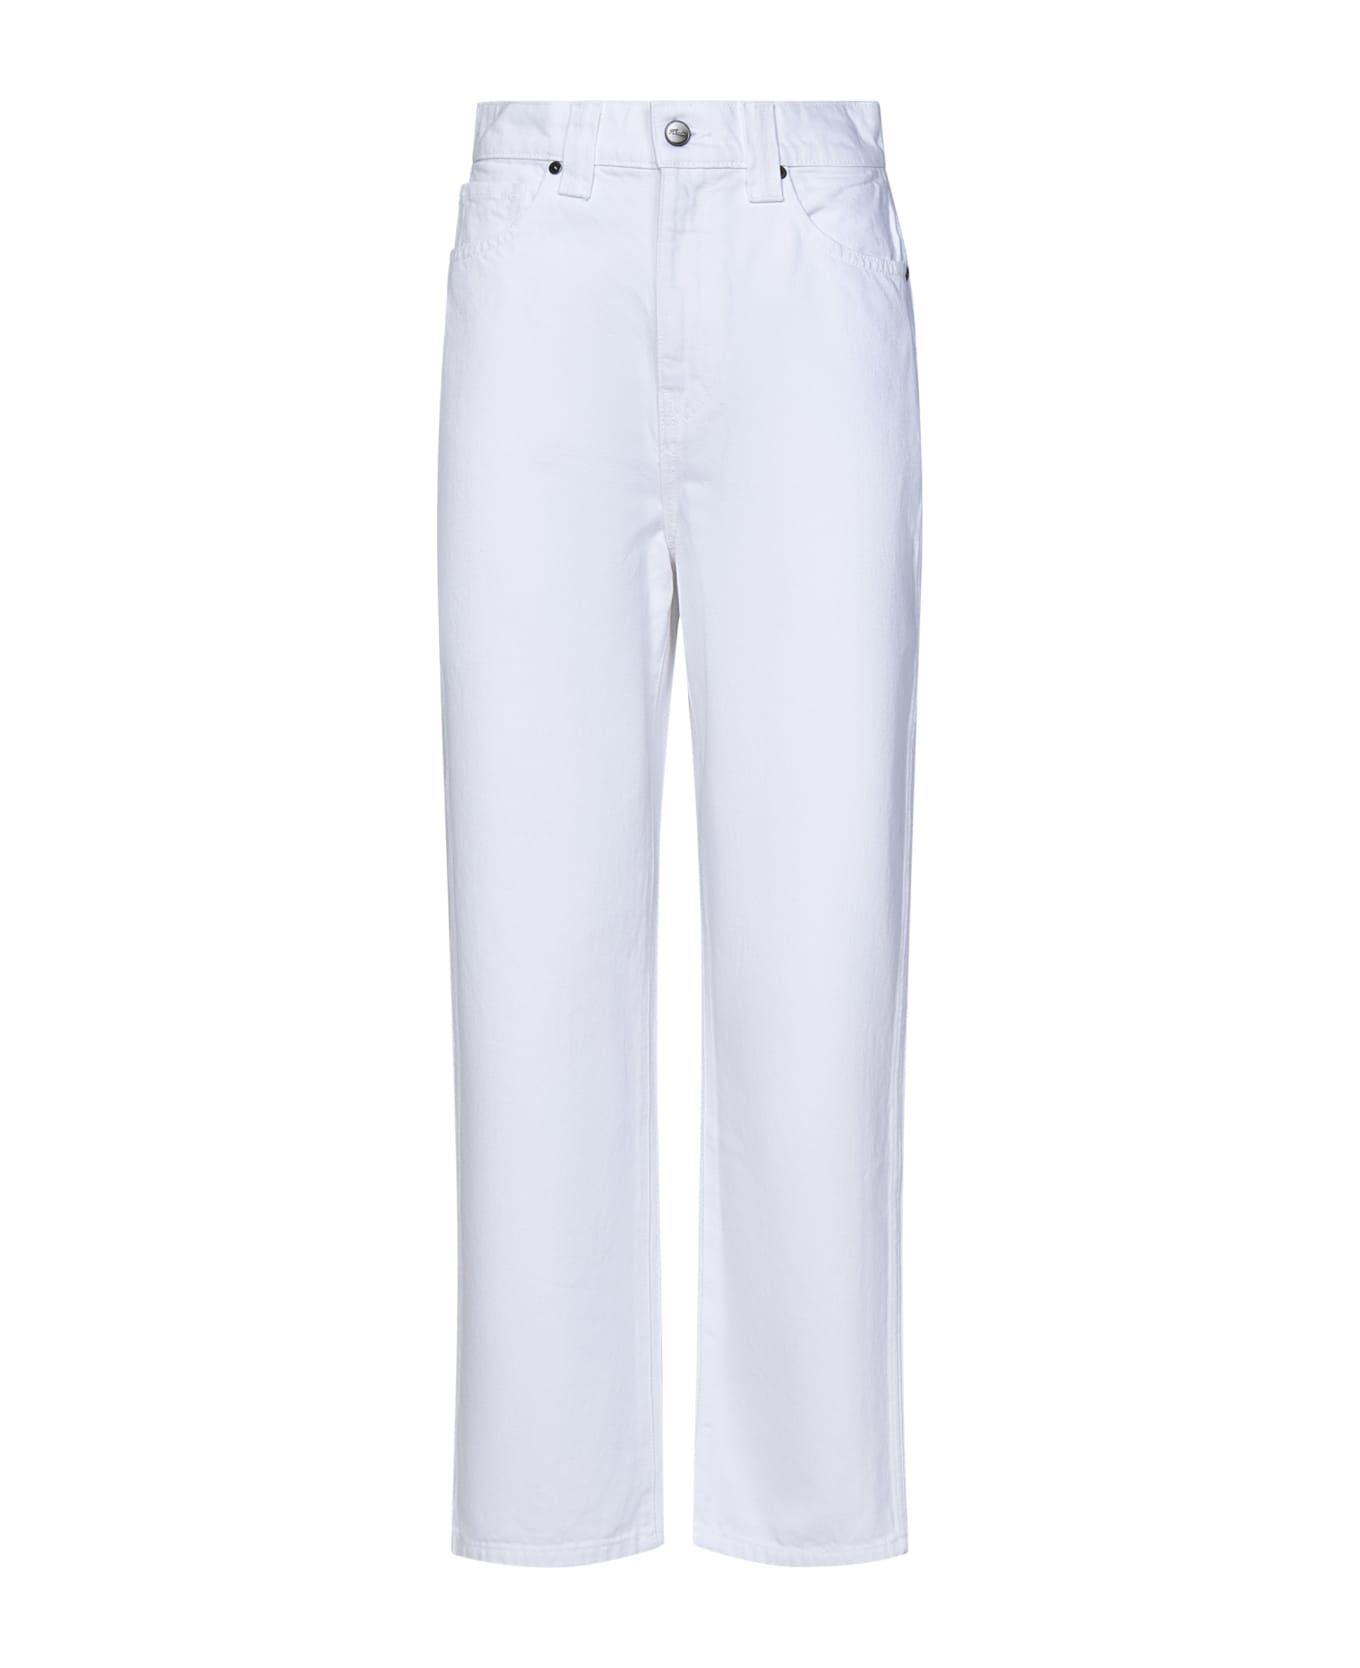 Khaite Ny Shalbi Jeans - White